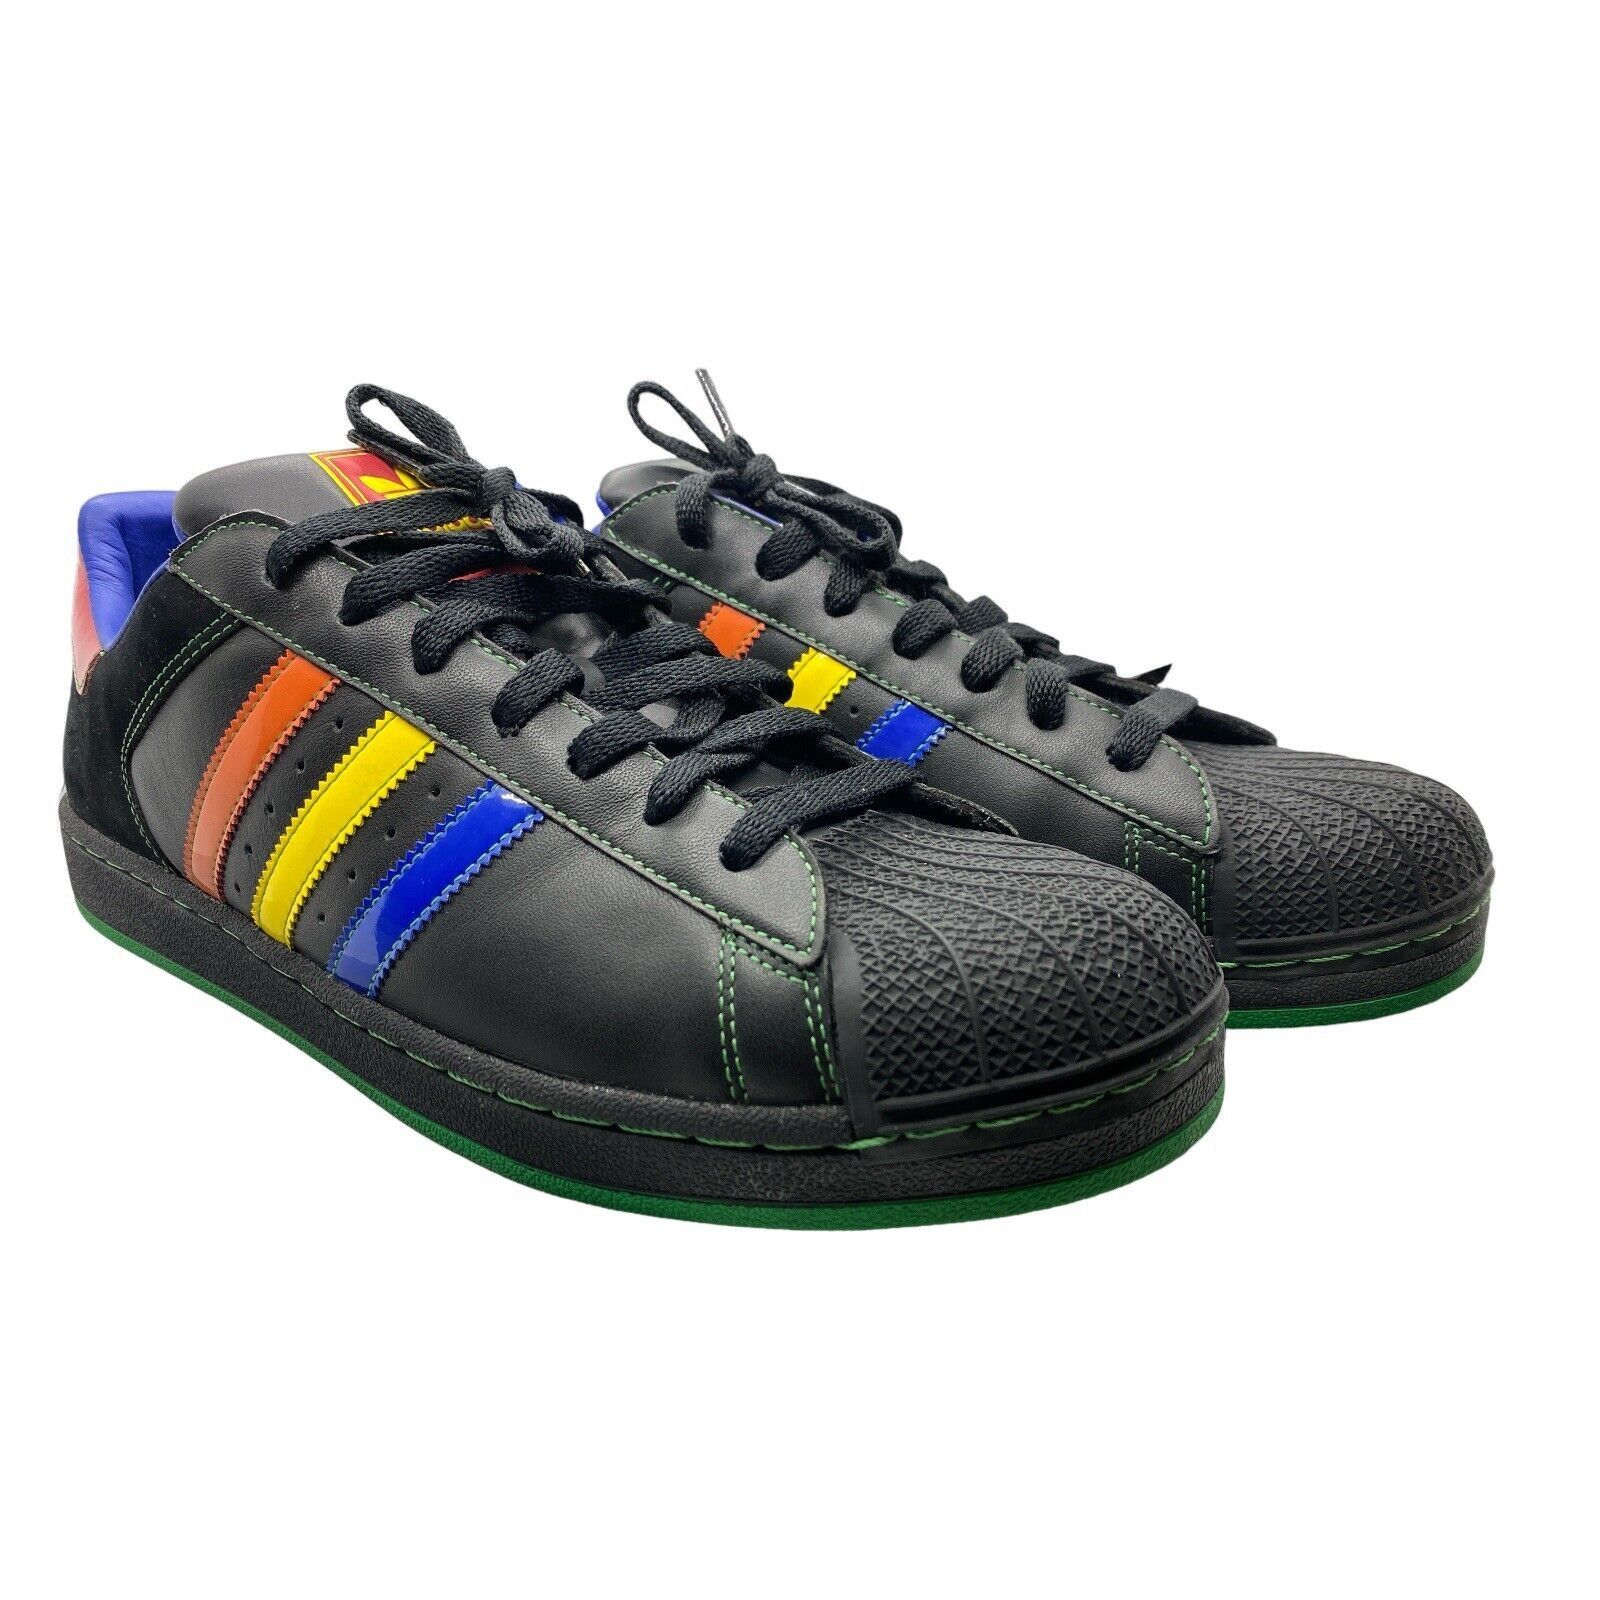 Adidas ADIDAS Original Superstar 2 II CB Black Shell Mens Sneakers Size US 13 / EU 46 - 2 Preview